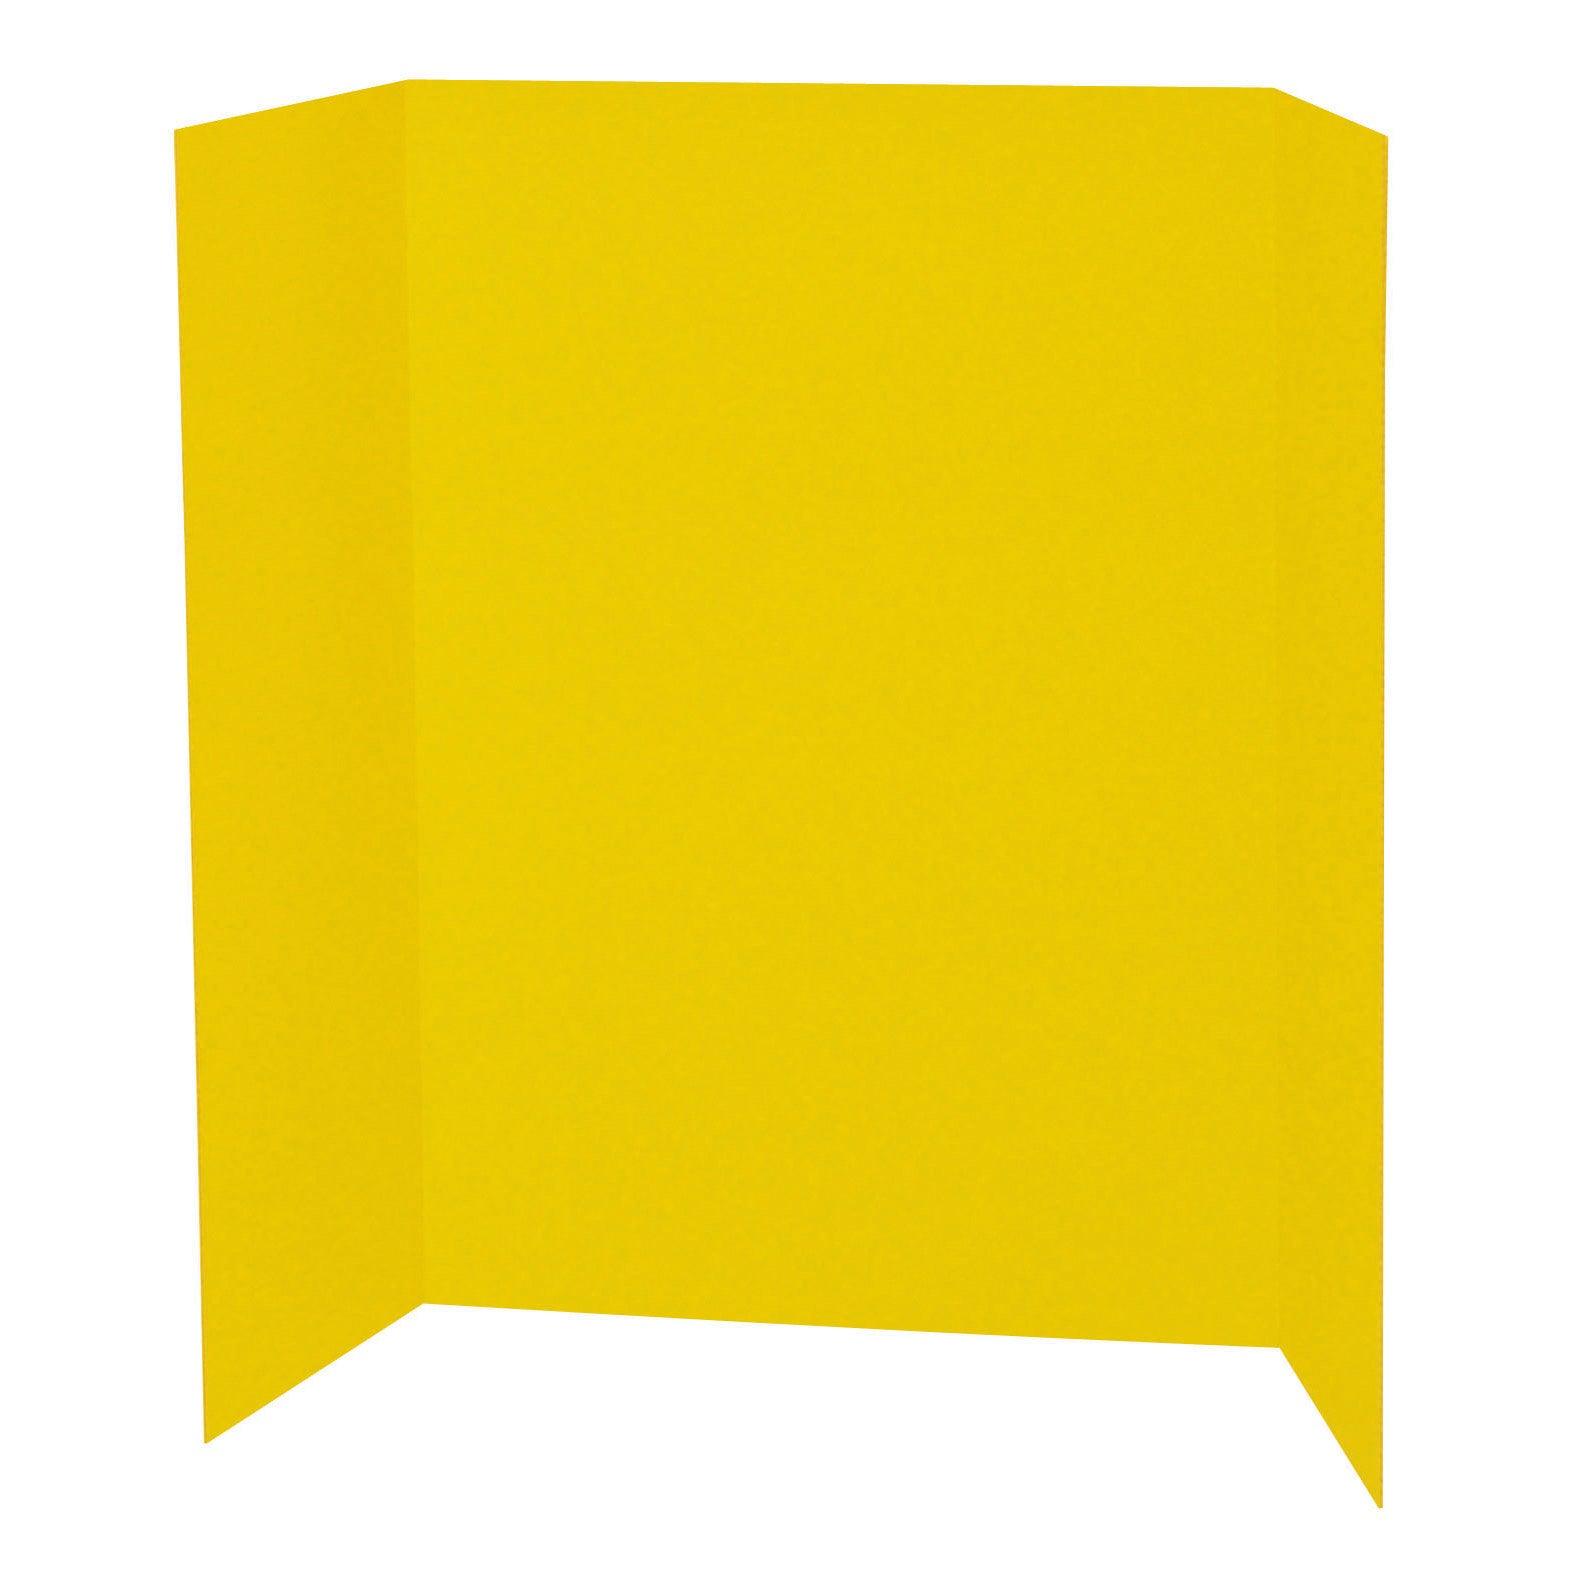 Presentation Board, Yellow, Single Wall, 48" x 36", Pack of 6 - Loomini